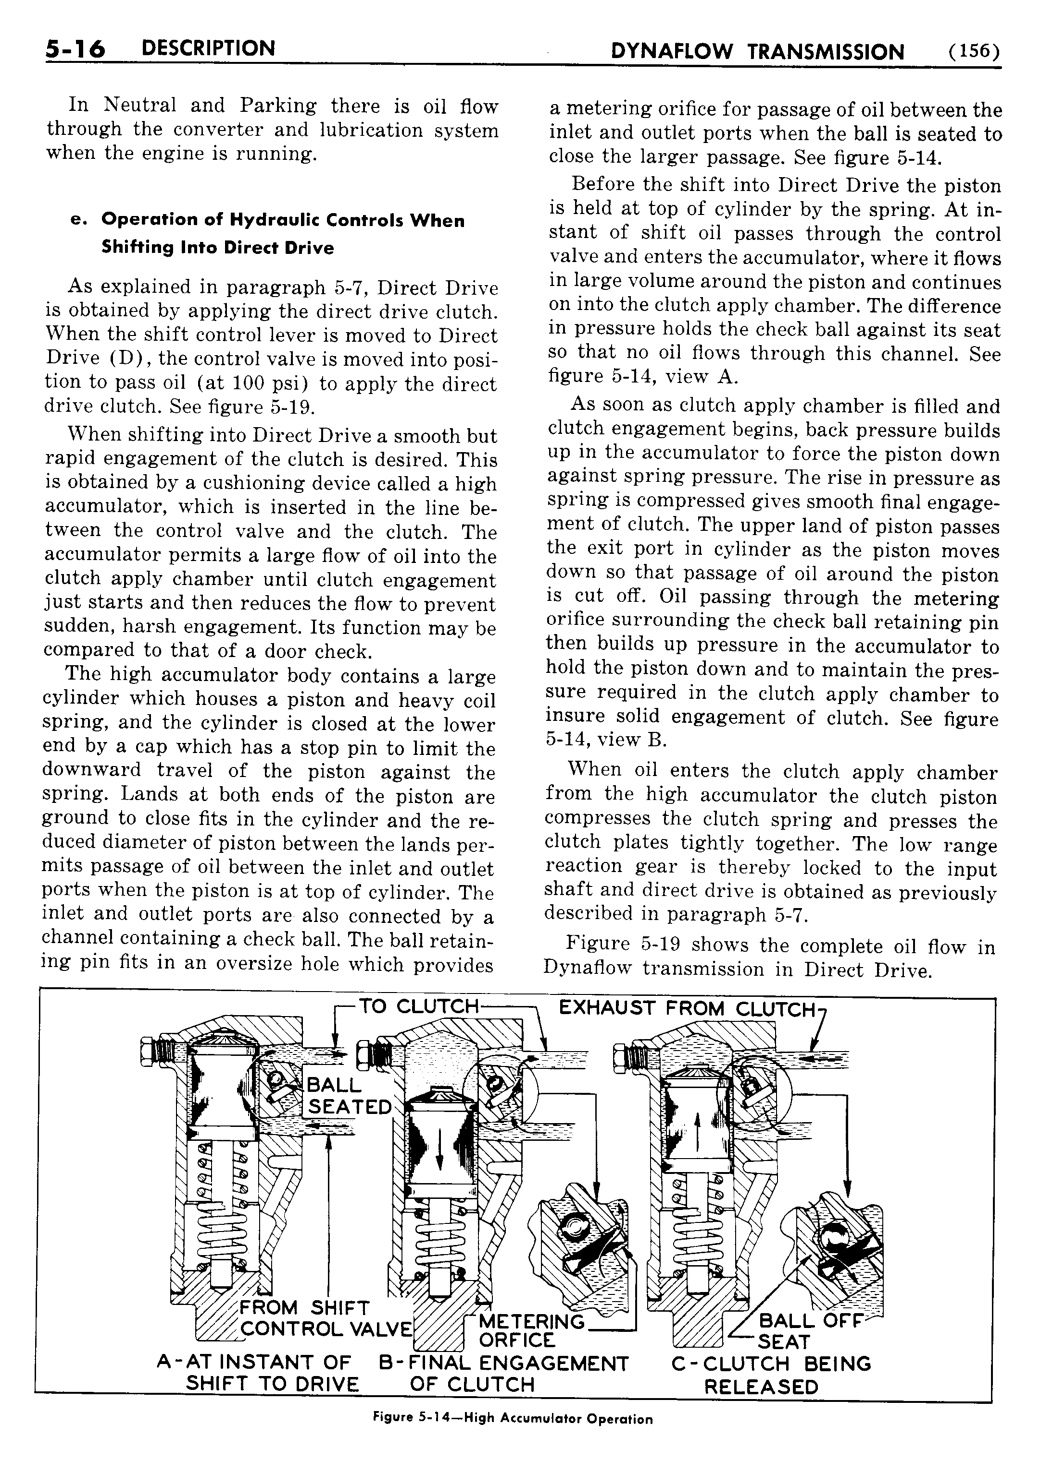 n_06 1955 Buick Shop Manual - Dynaflow-016-016.jpg